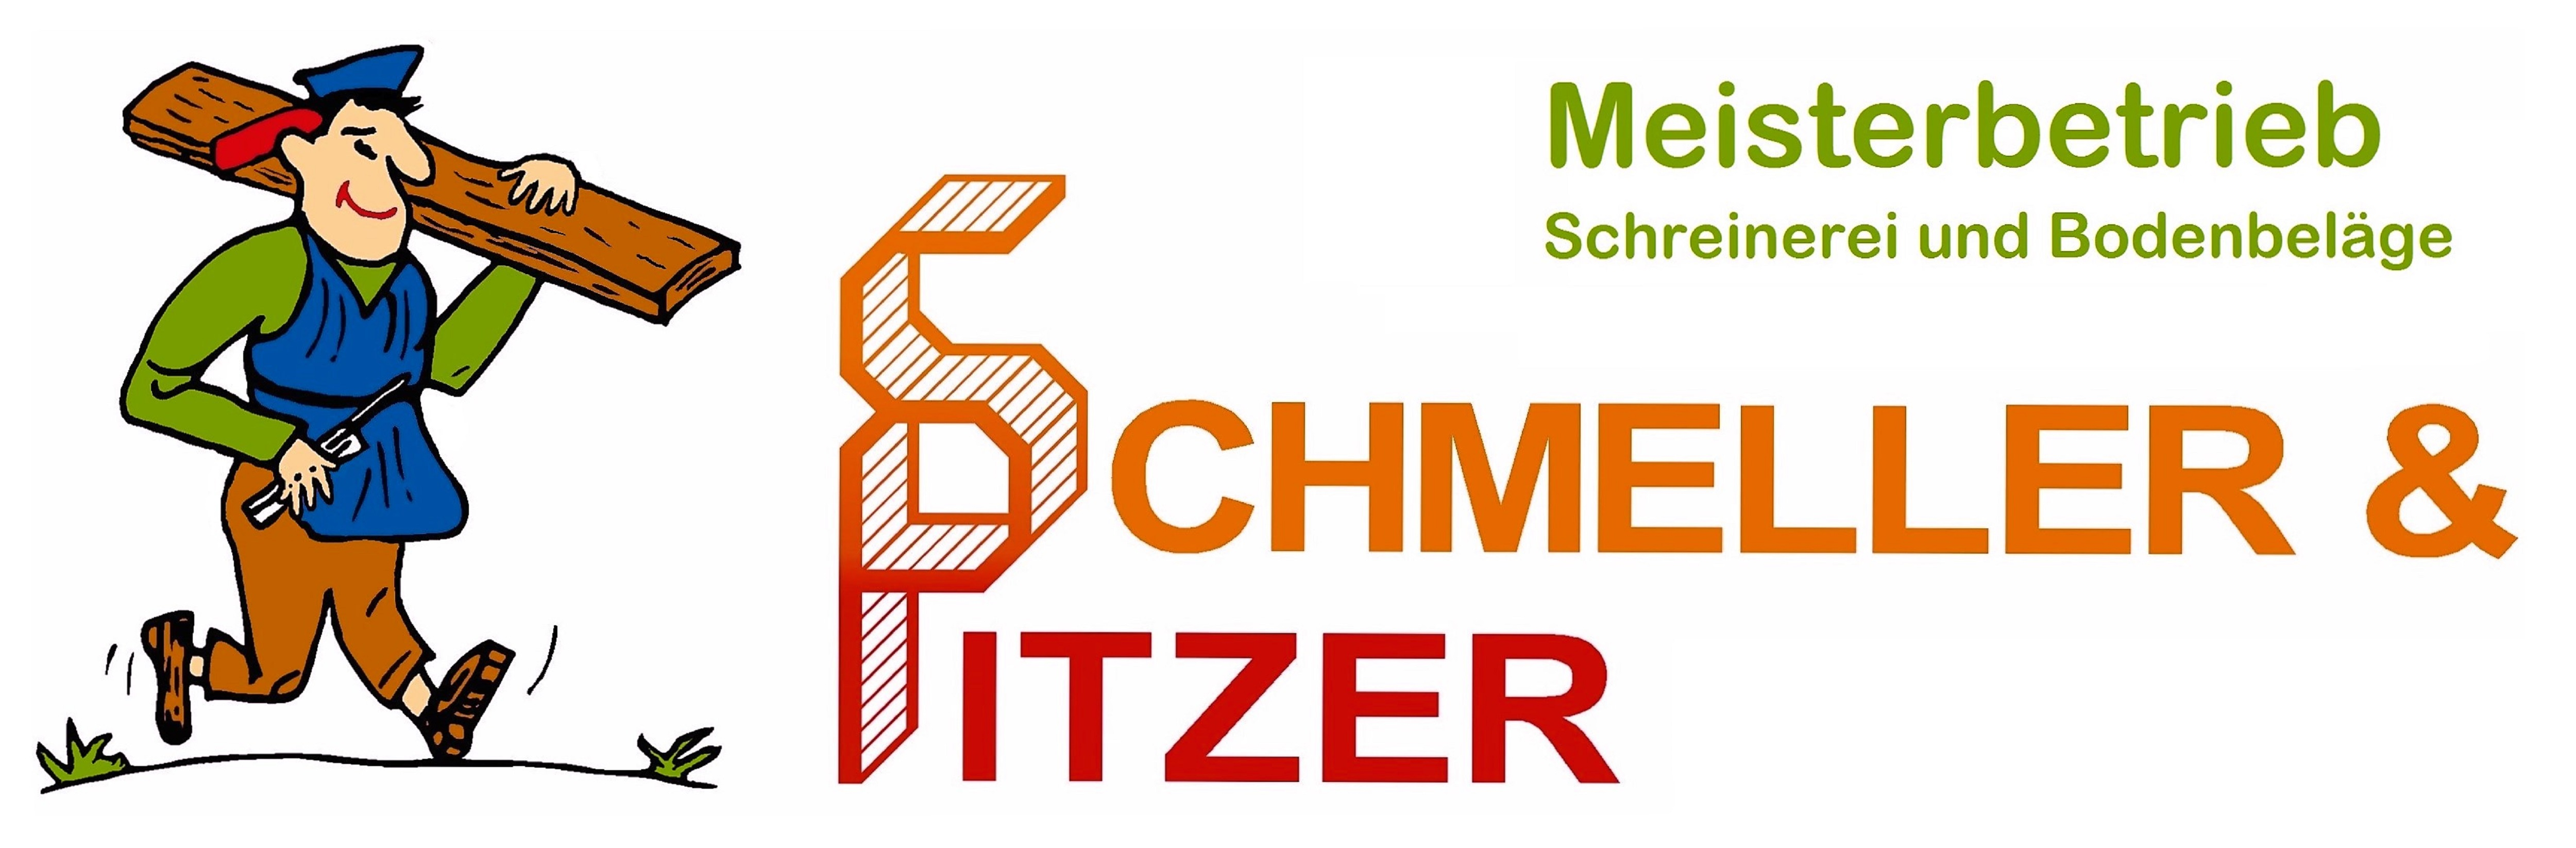 (c) Schmeller-pitzer.de